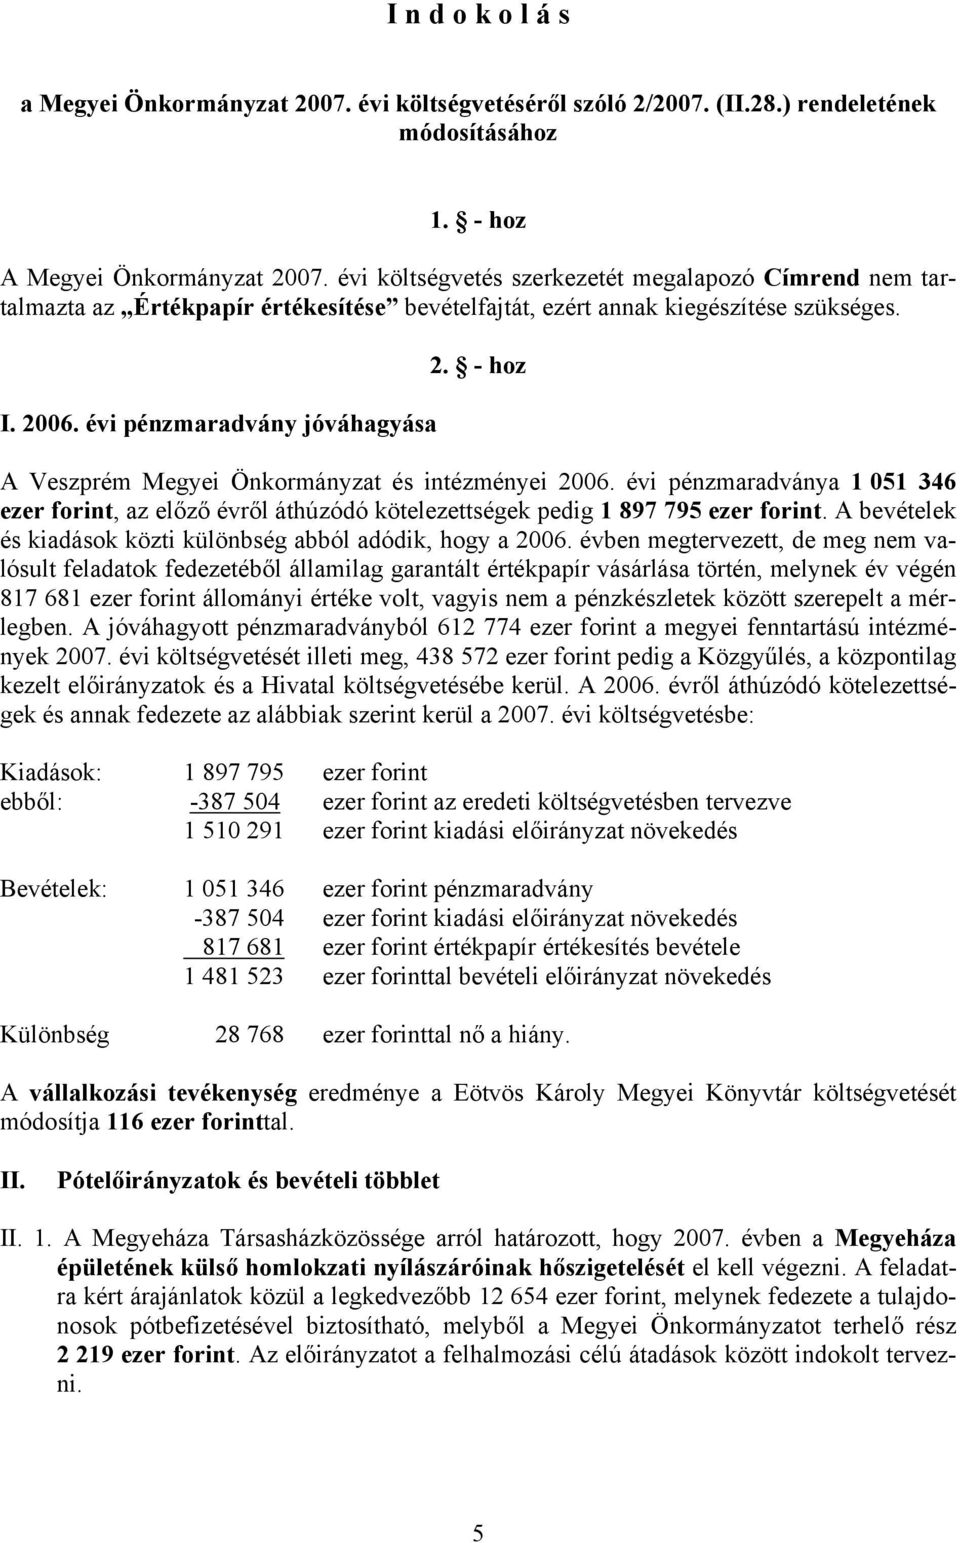 - hoz A Veszprém Megyei Önkormányzat és intézményei 2006. évi pénzmaradványa 1 051 346 ezer forint, az előző évről áthúzódó kötelezettségek pedig 1 897 795 ezer forint.